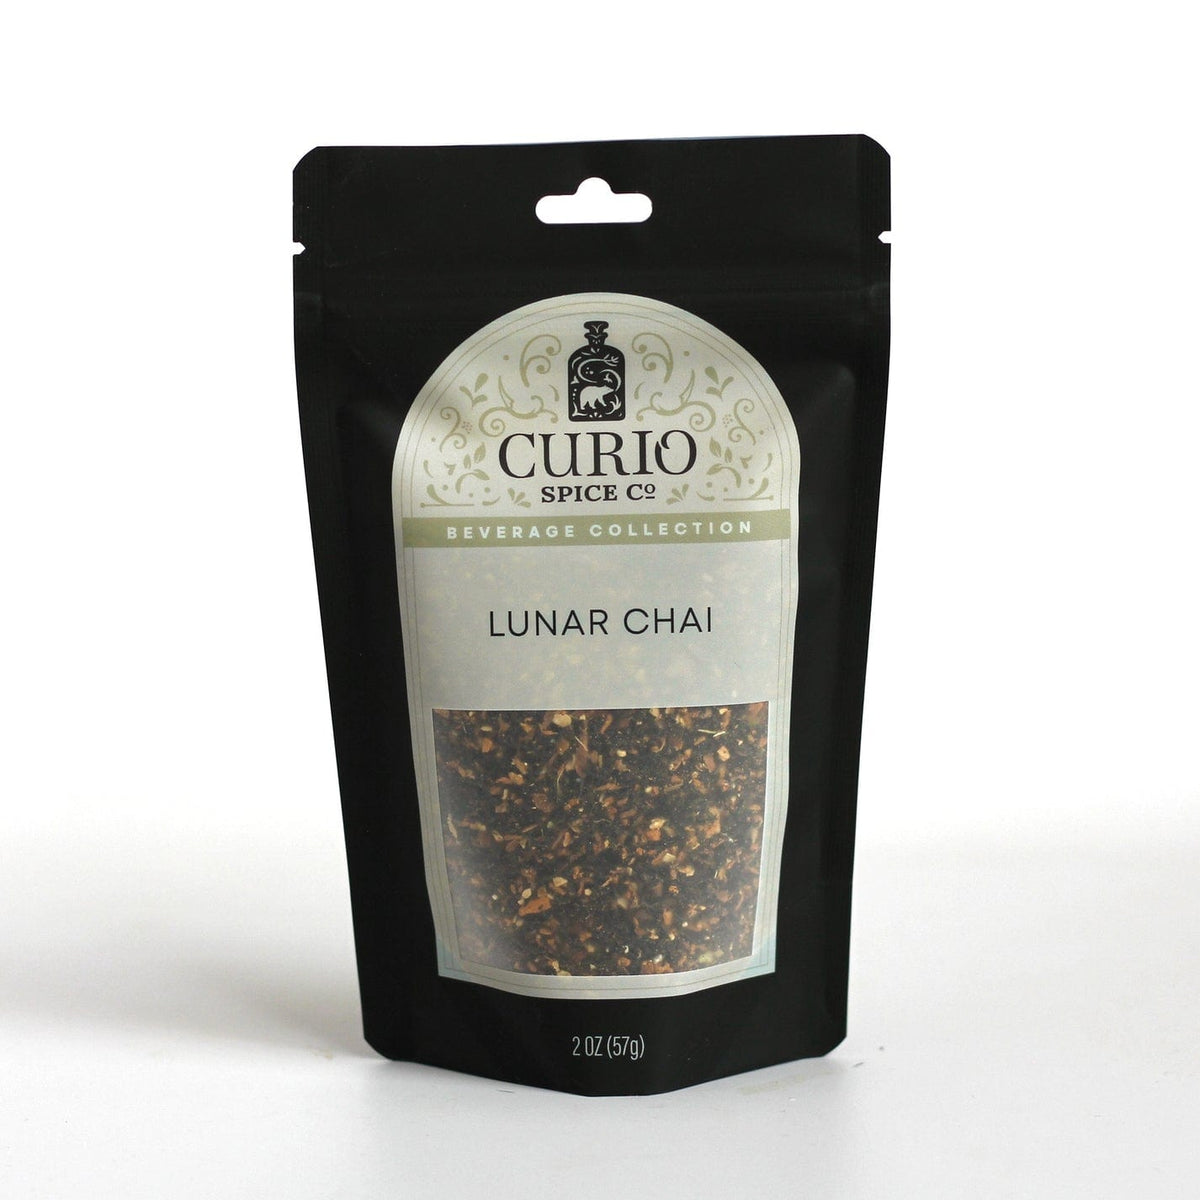 Curio Spice Co Lunar Chai